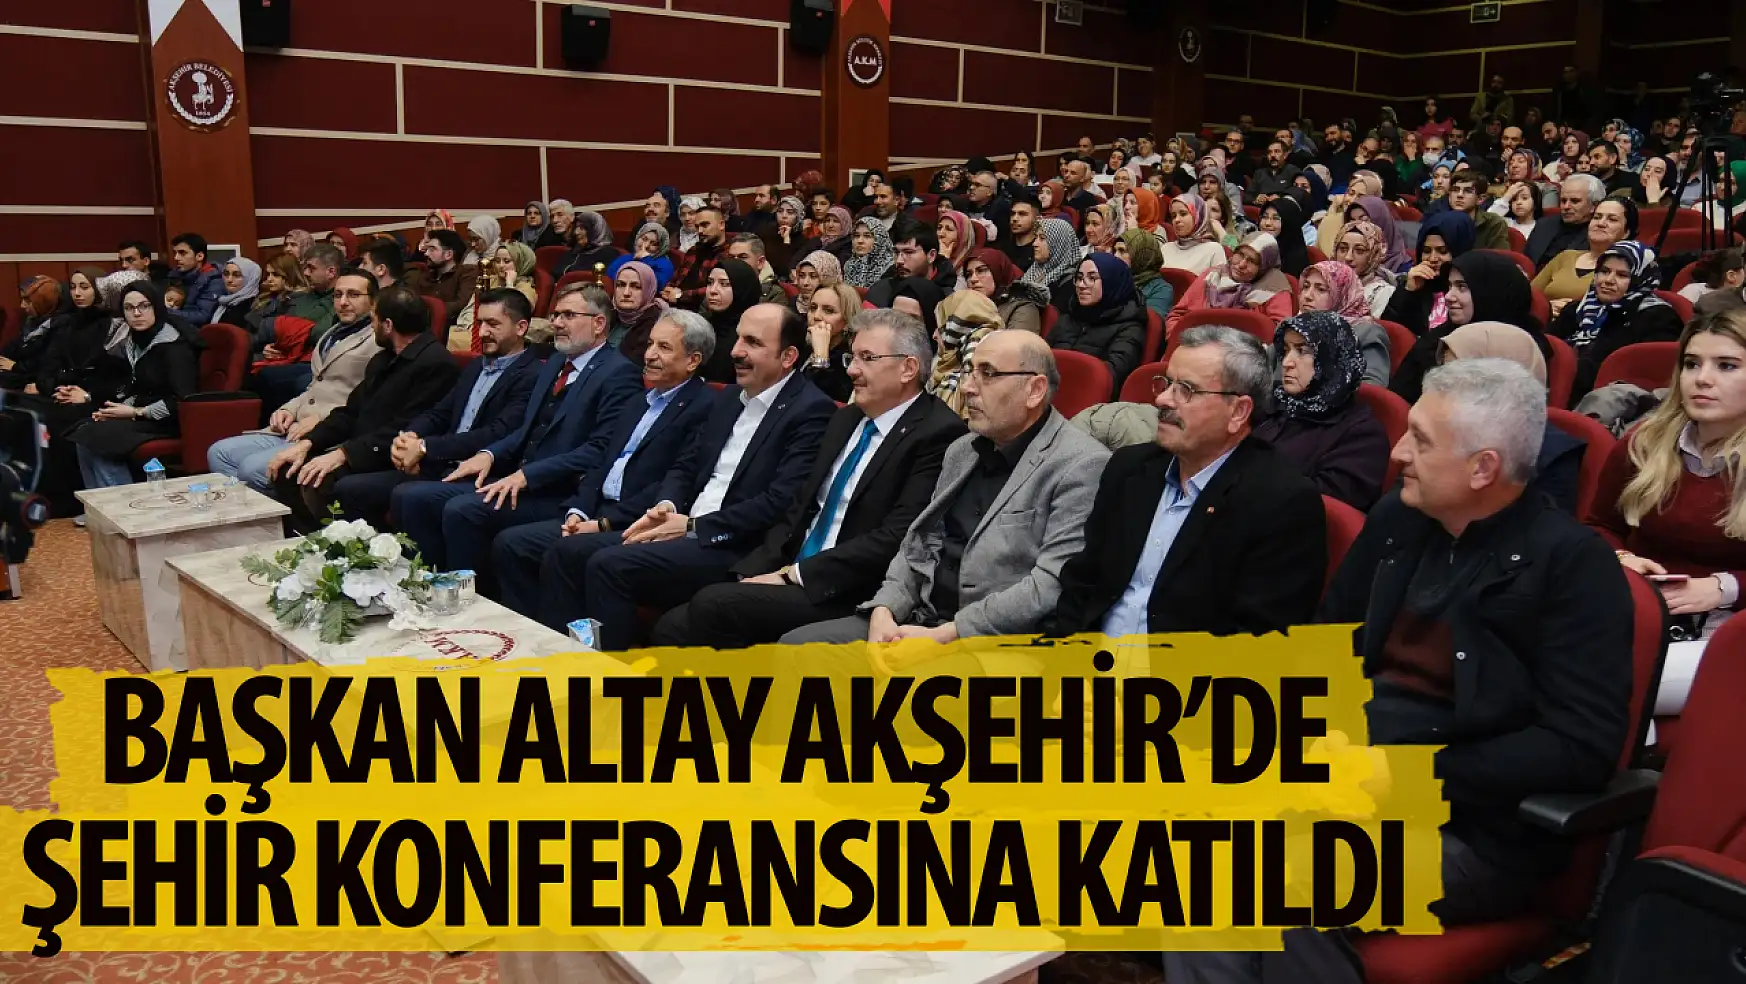 Altay Akşehir'de düzenlenen şehir Konferanslarına katıldı